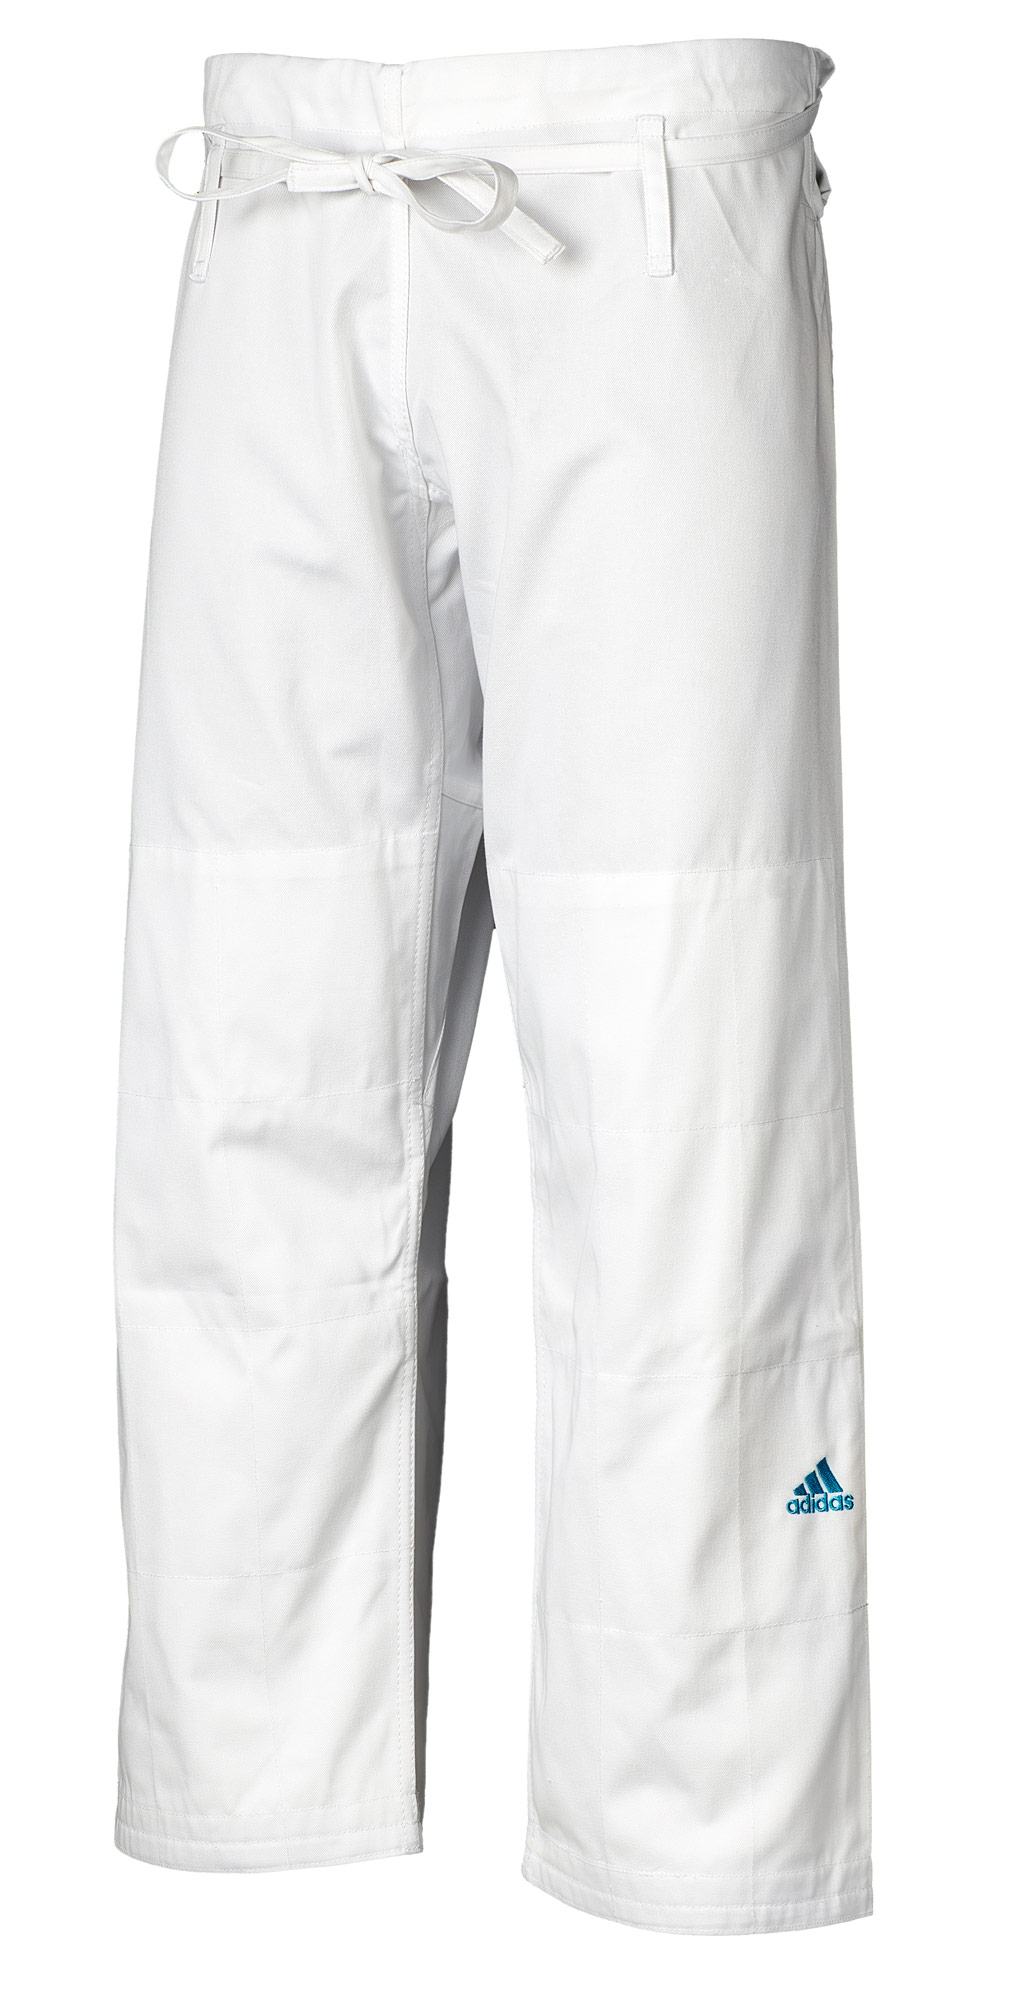 adidas judo gi Contest J650 white/blue stripes